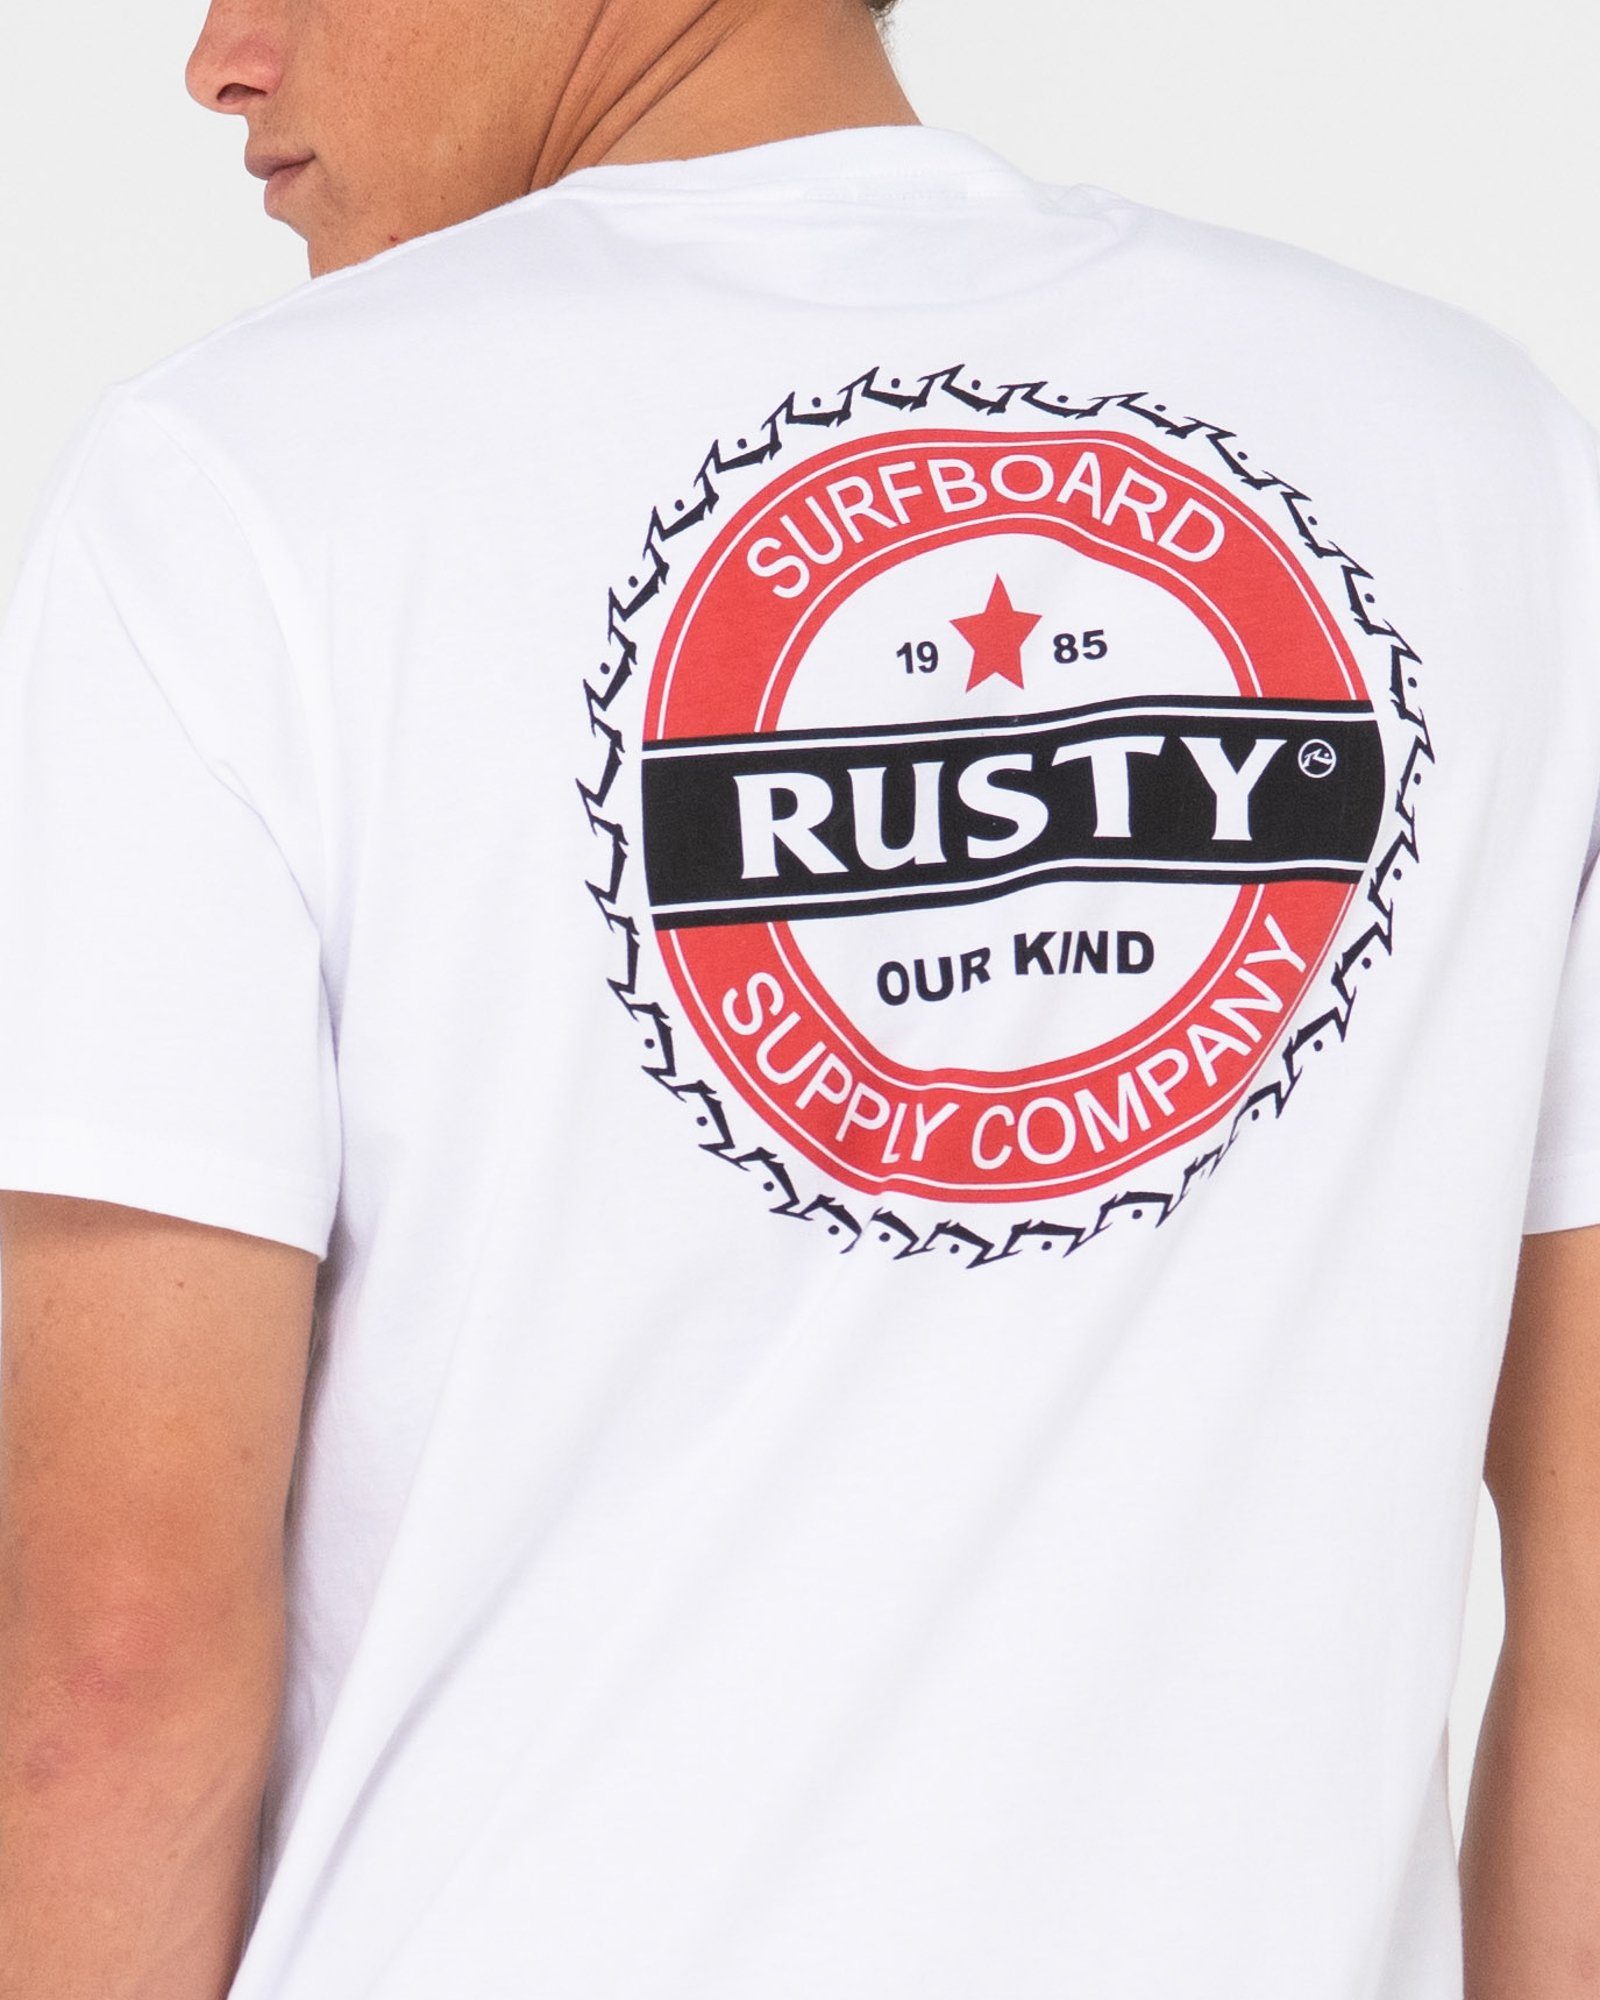 TEE SHORT Rusty T-Shirt CAP BOTTLE SLEEVE